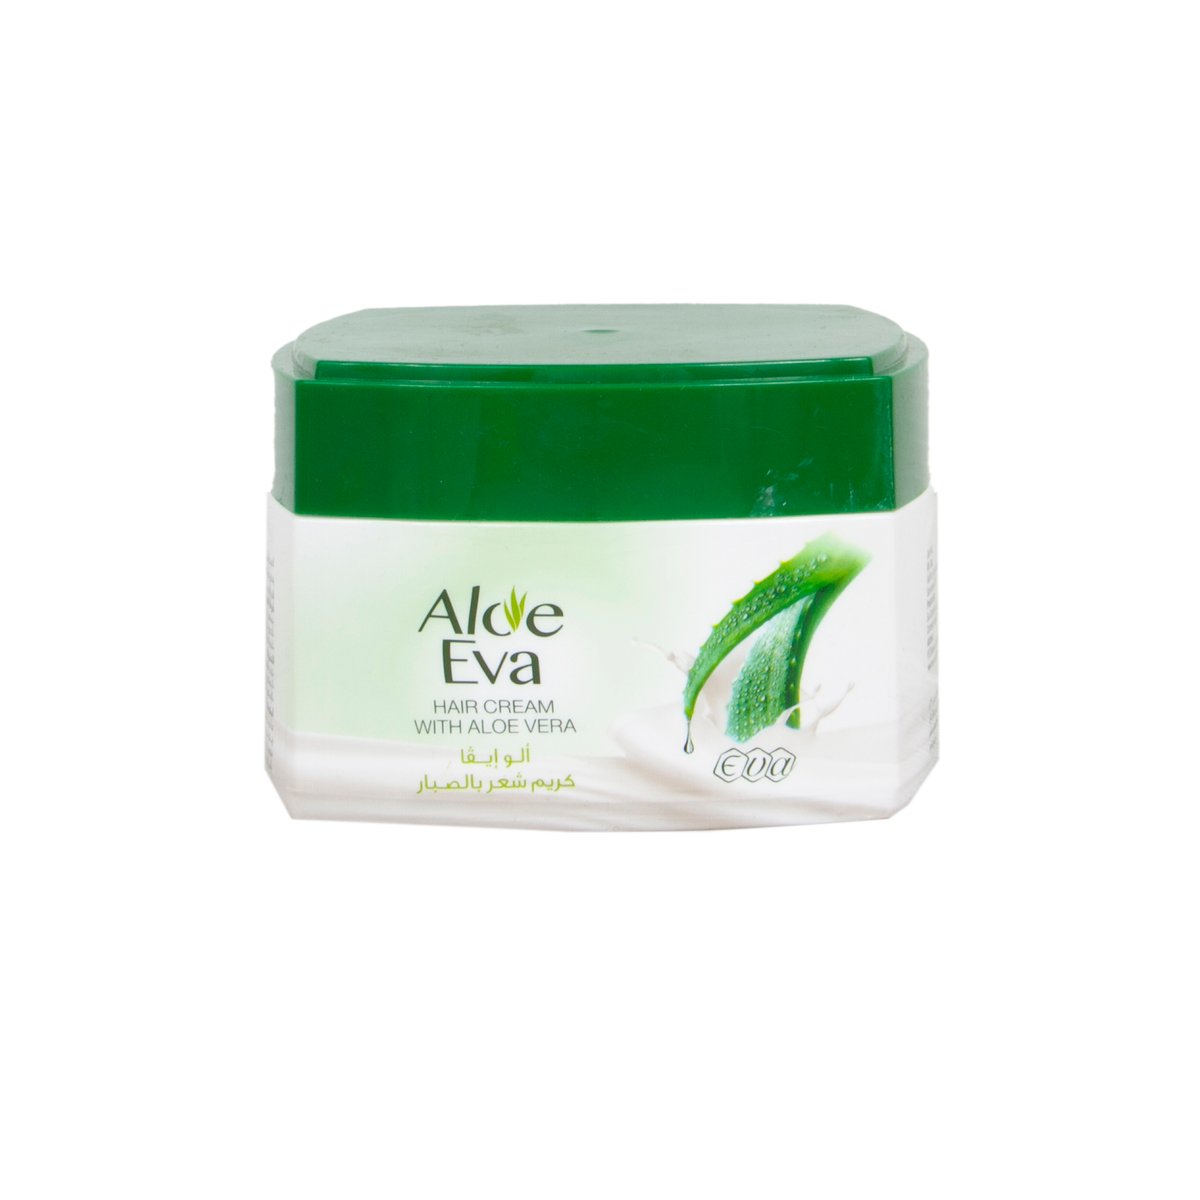 Aloe Eva Hair Cream With Aloe Vera 185 g